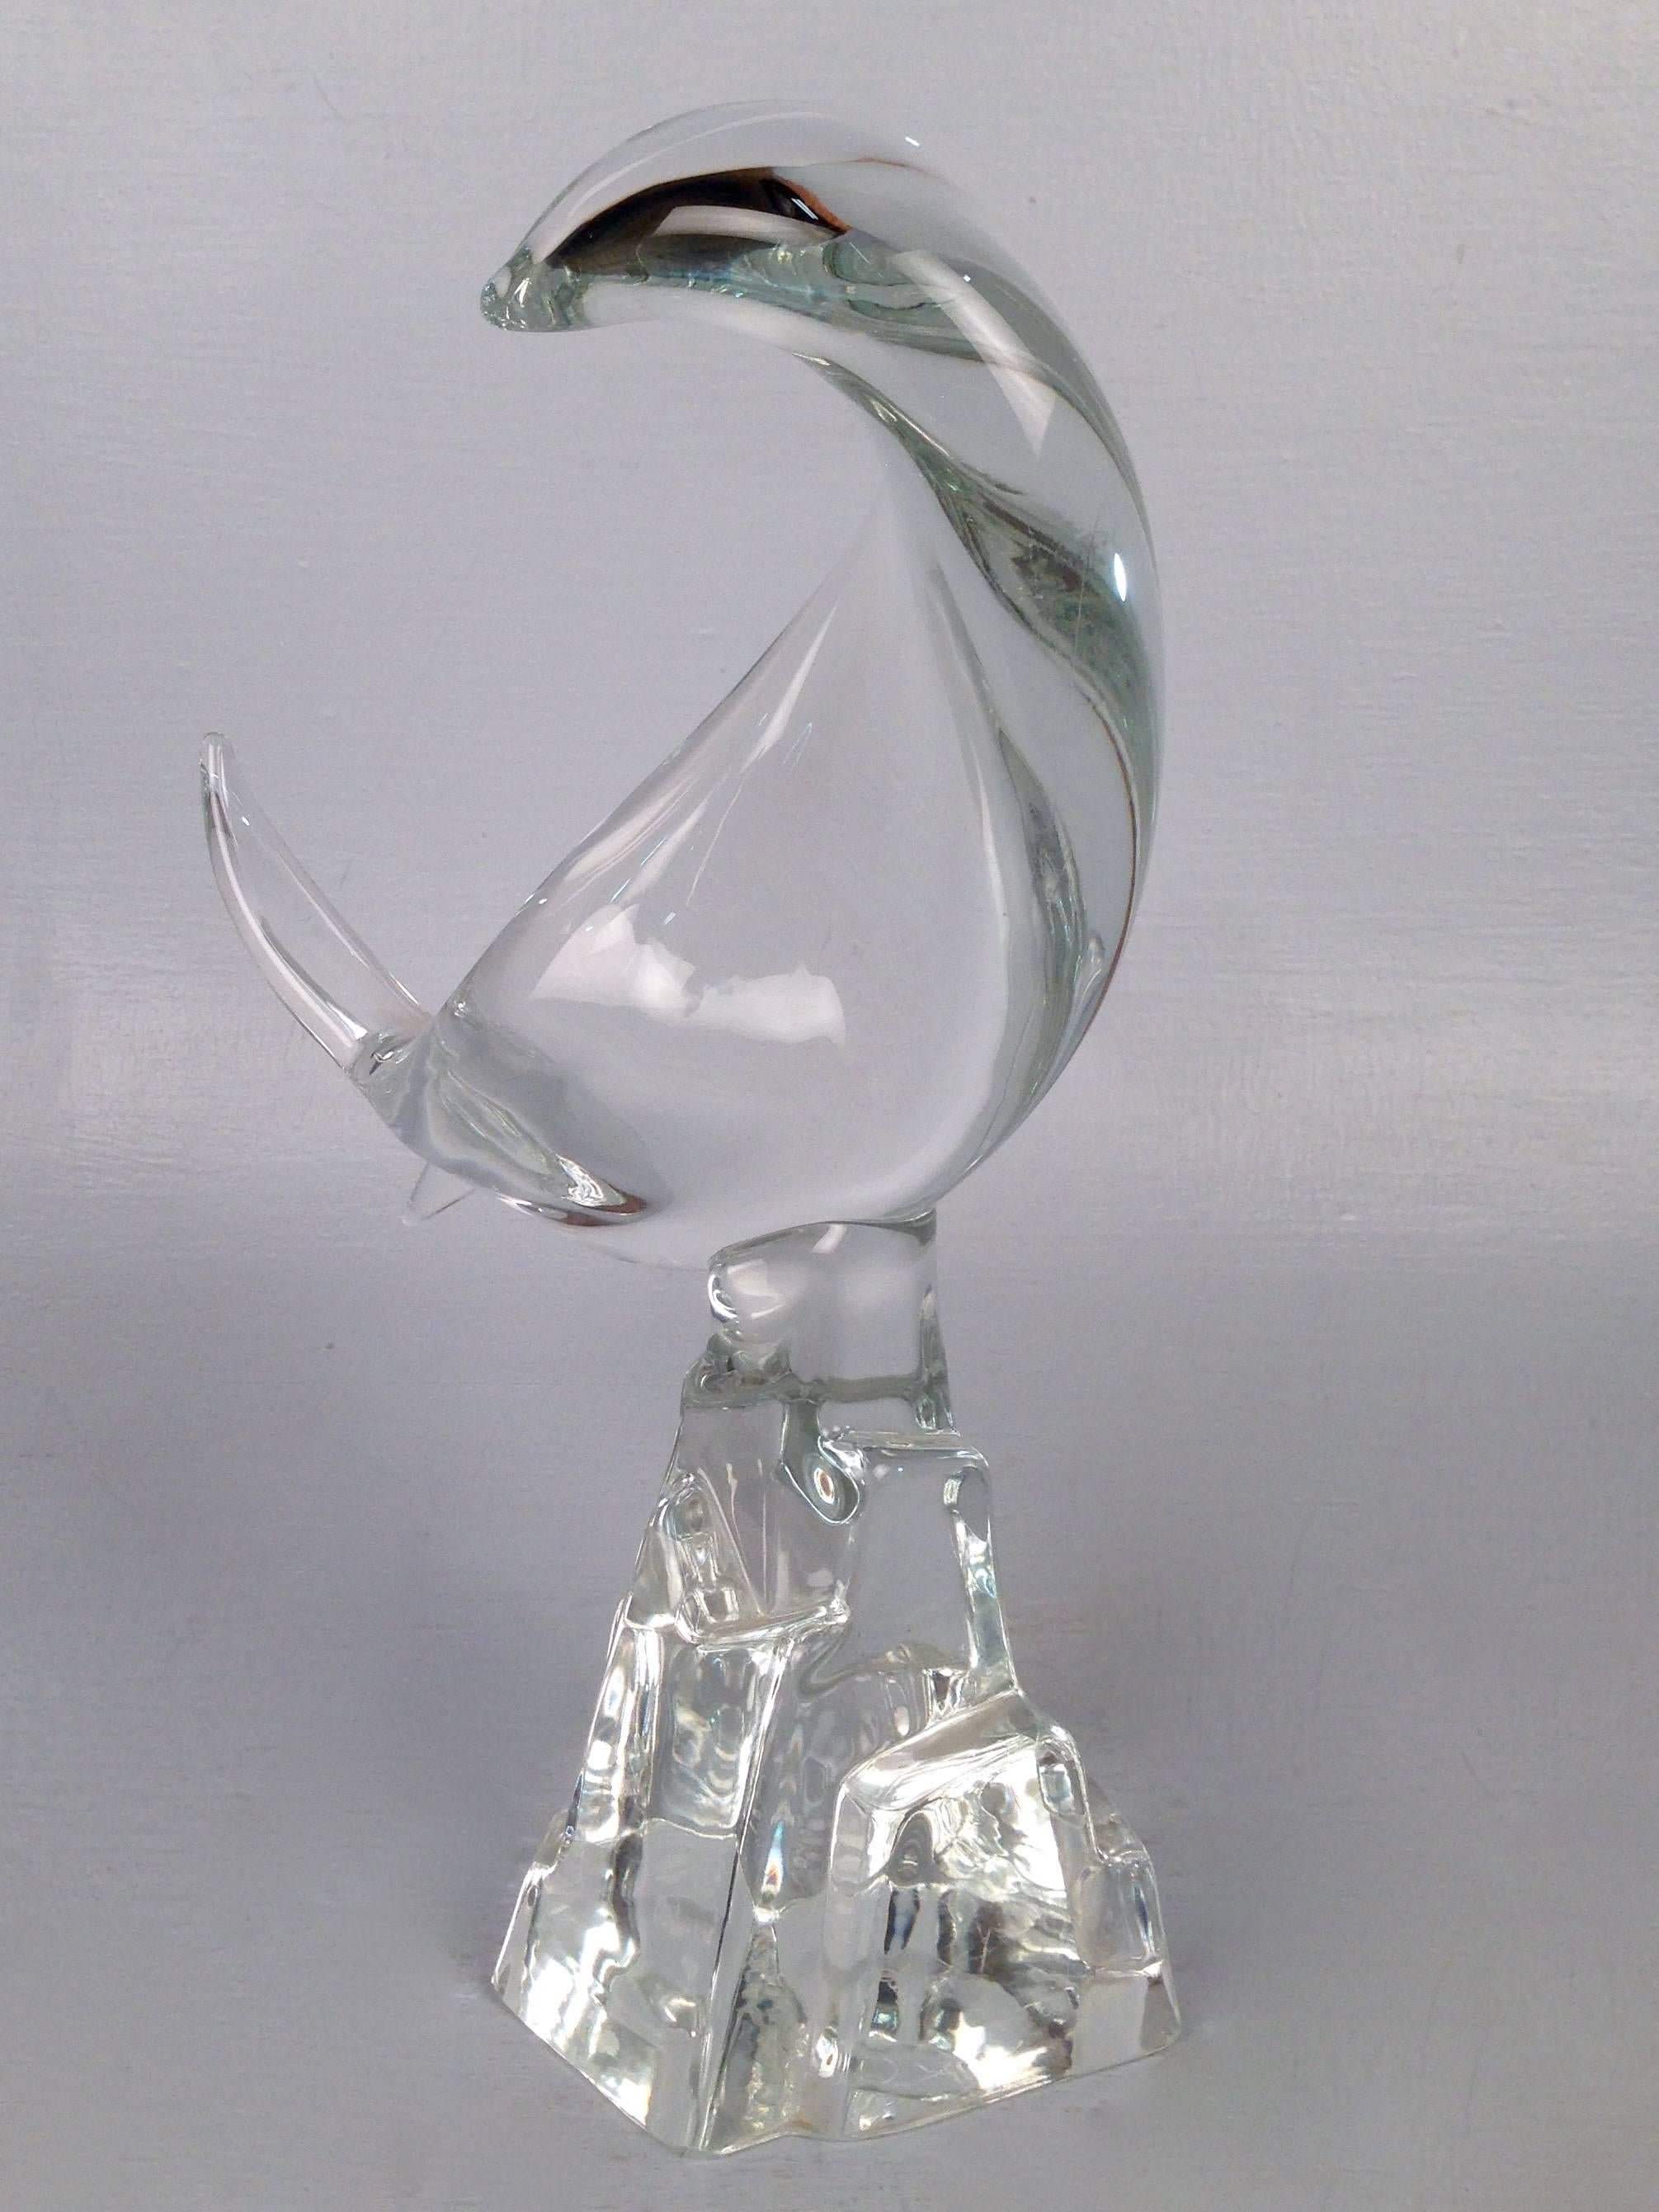 Abstrakte Skulptur eines Fisches aus Muranoglas von Licio Zanetti für Zanetti Vetreria Artistica. Der Fisch aus klarem Glas ist gedreht, als würde er durch die Luft springen, und auf einem stilisierten Sockel aus Felsen montiert. 

Der Sockel